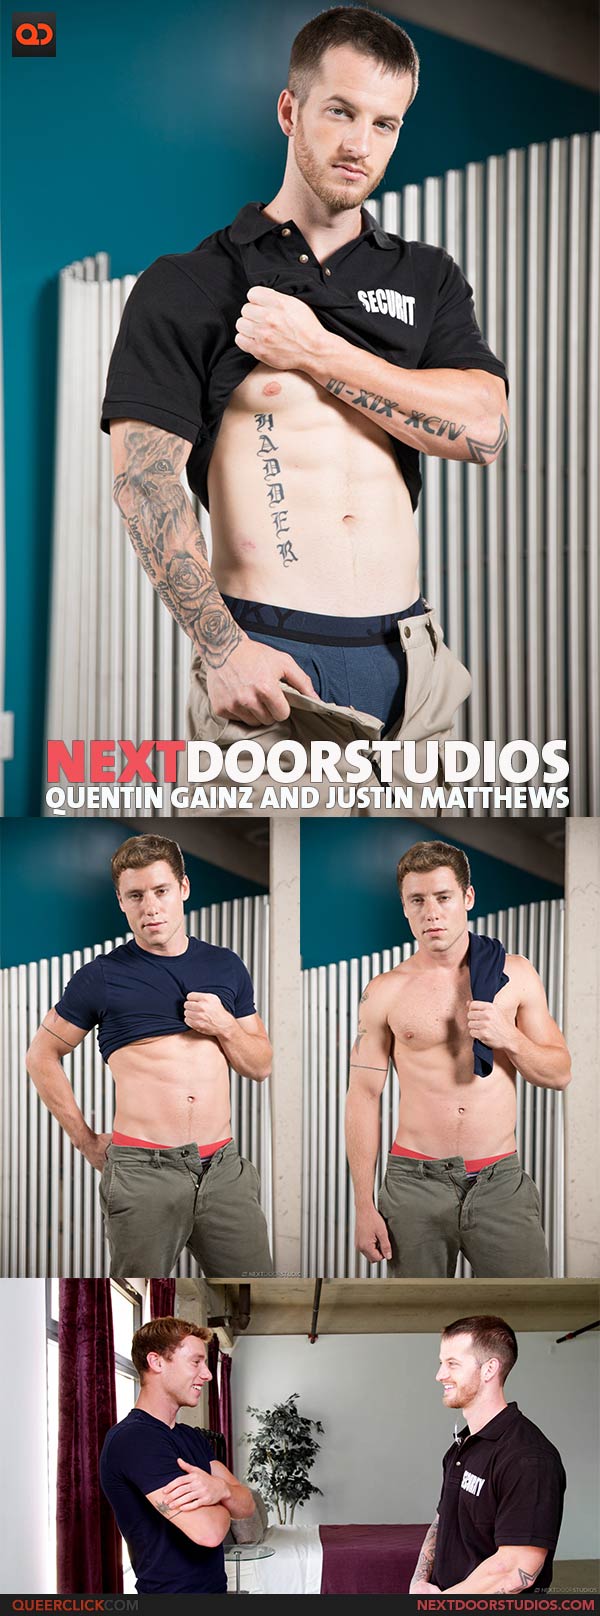 Next Door Studios:  Quentin Gainz and Justin Matthews